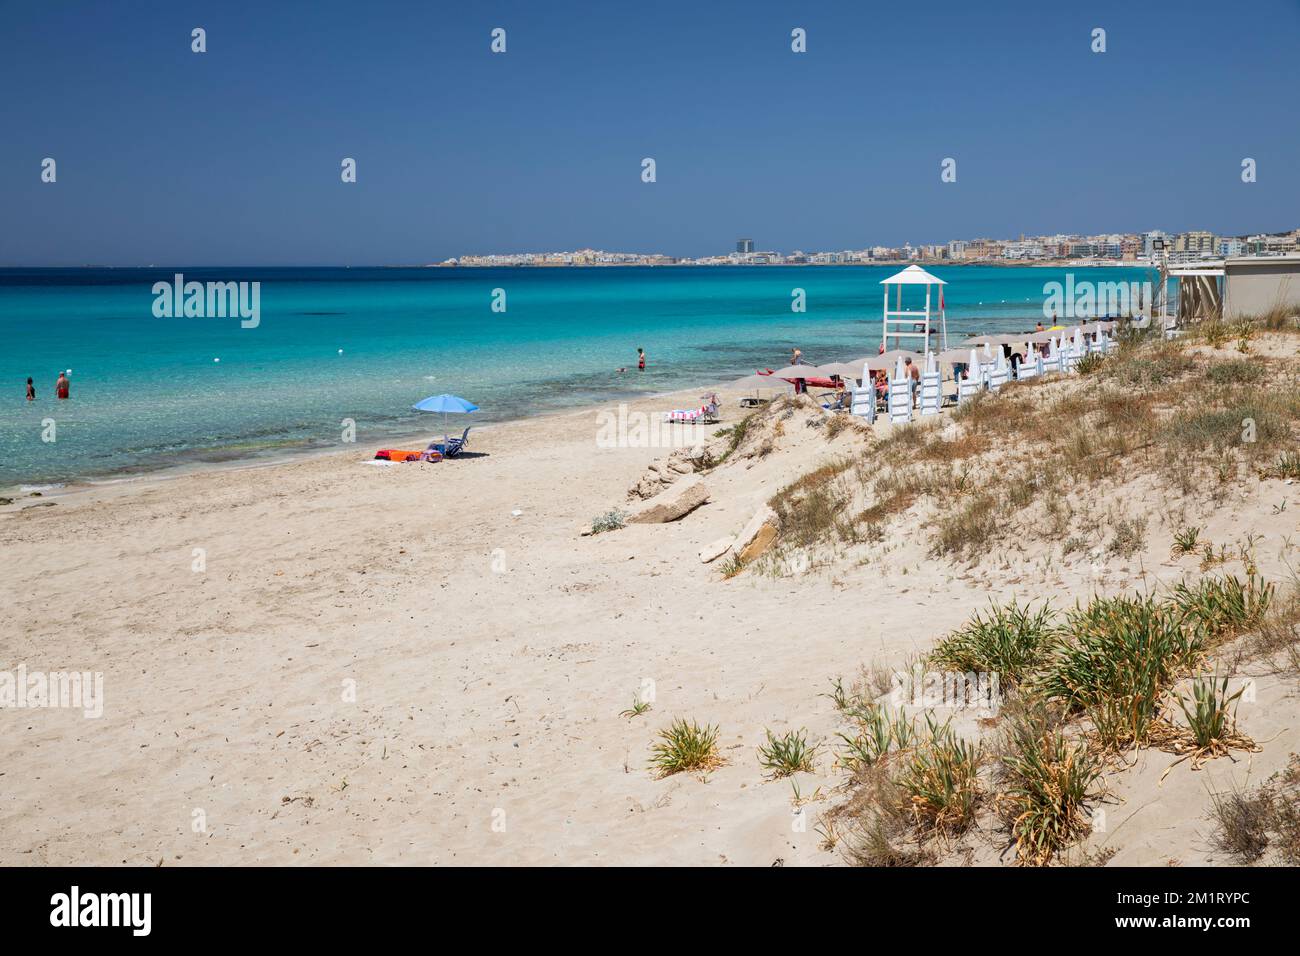 Vue sur la plage de sable blanc et les eaux turquoise de la mer Ionienne, Gallipoli, Puglia, Italie, Europe Banque D'Images